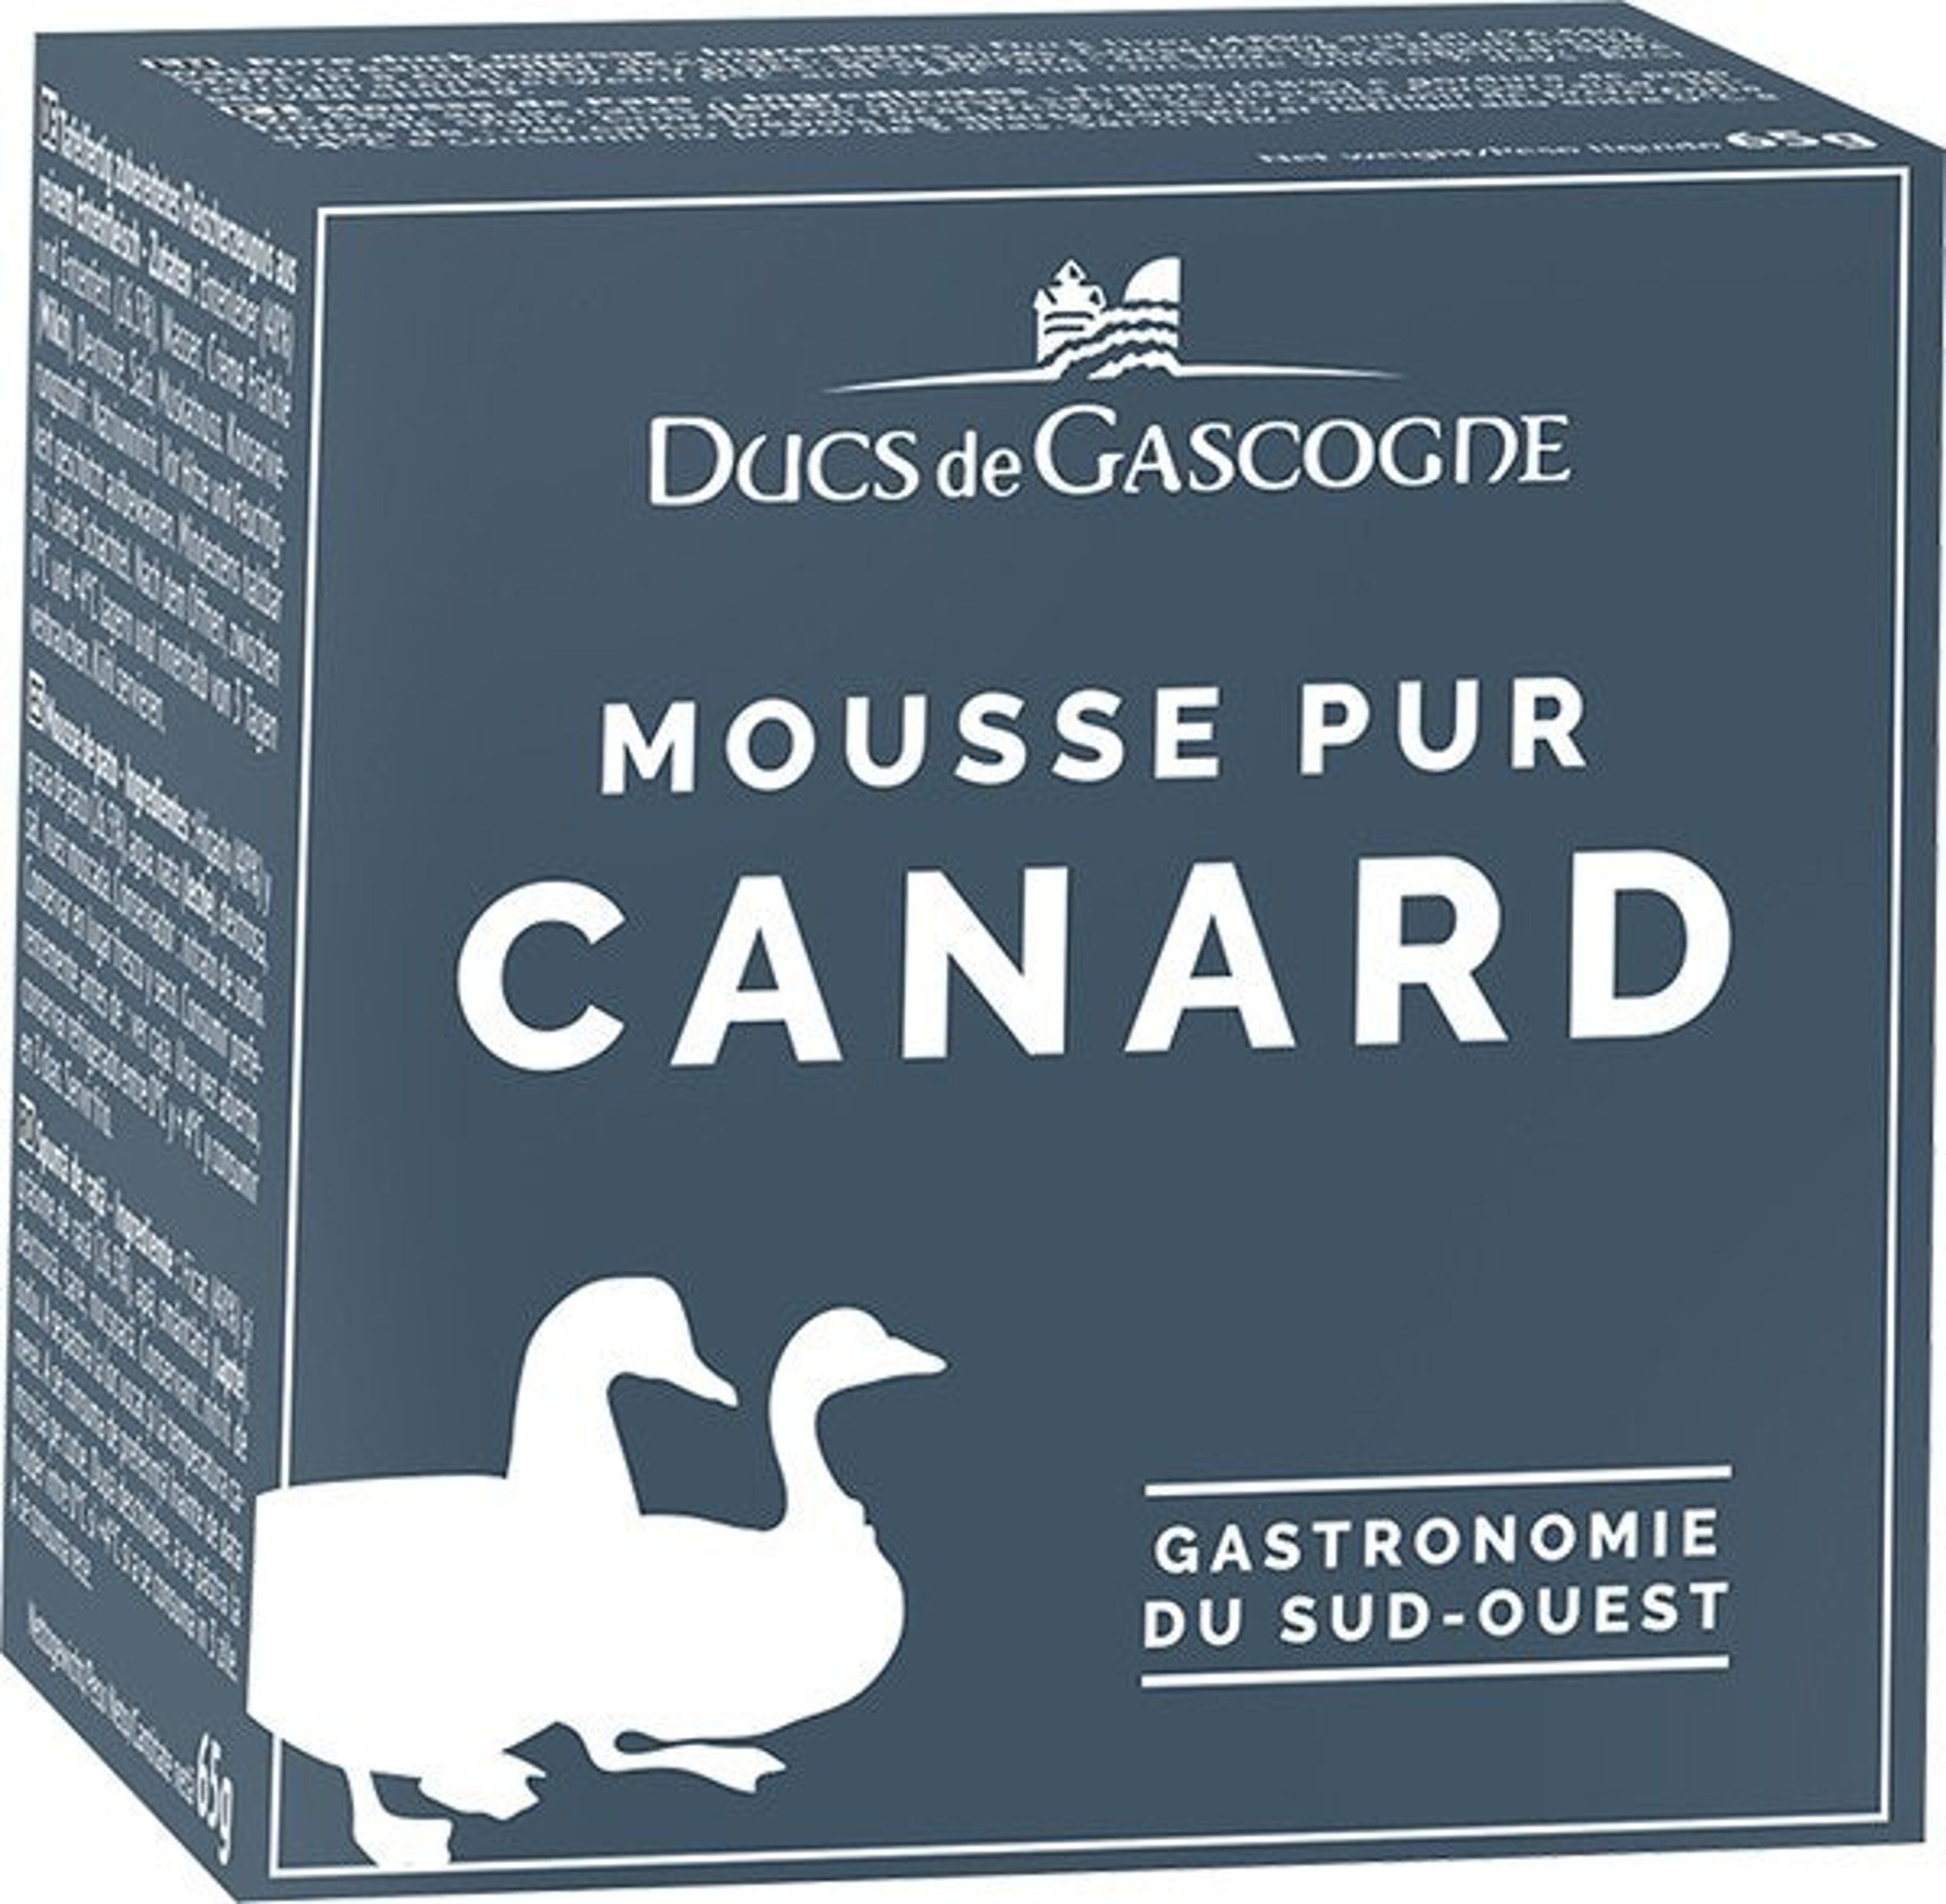 Buy DUCS DE GASCOGNE wholesale products on Ankorstore